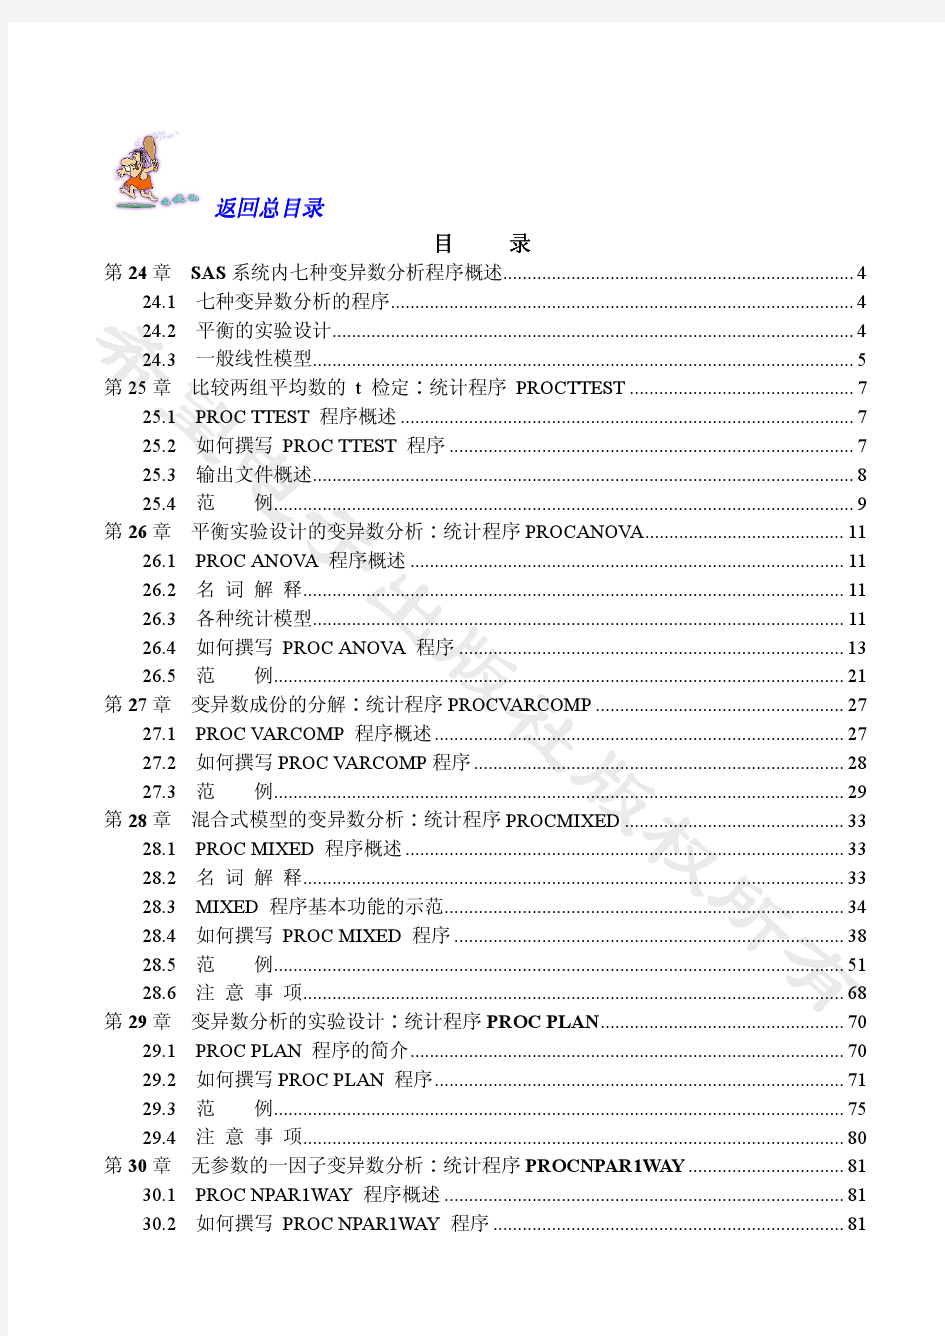 目前最详细的中文sas软件教程第五卷(共五卷)